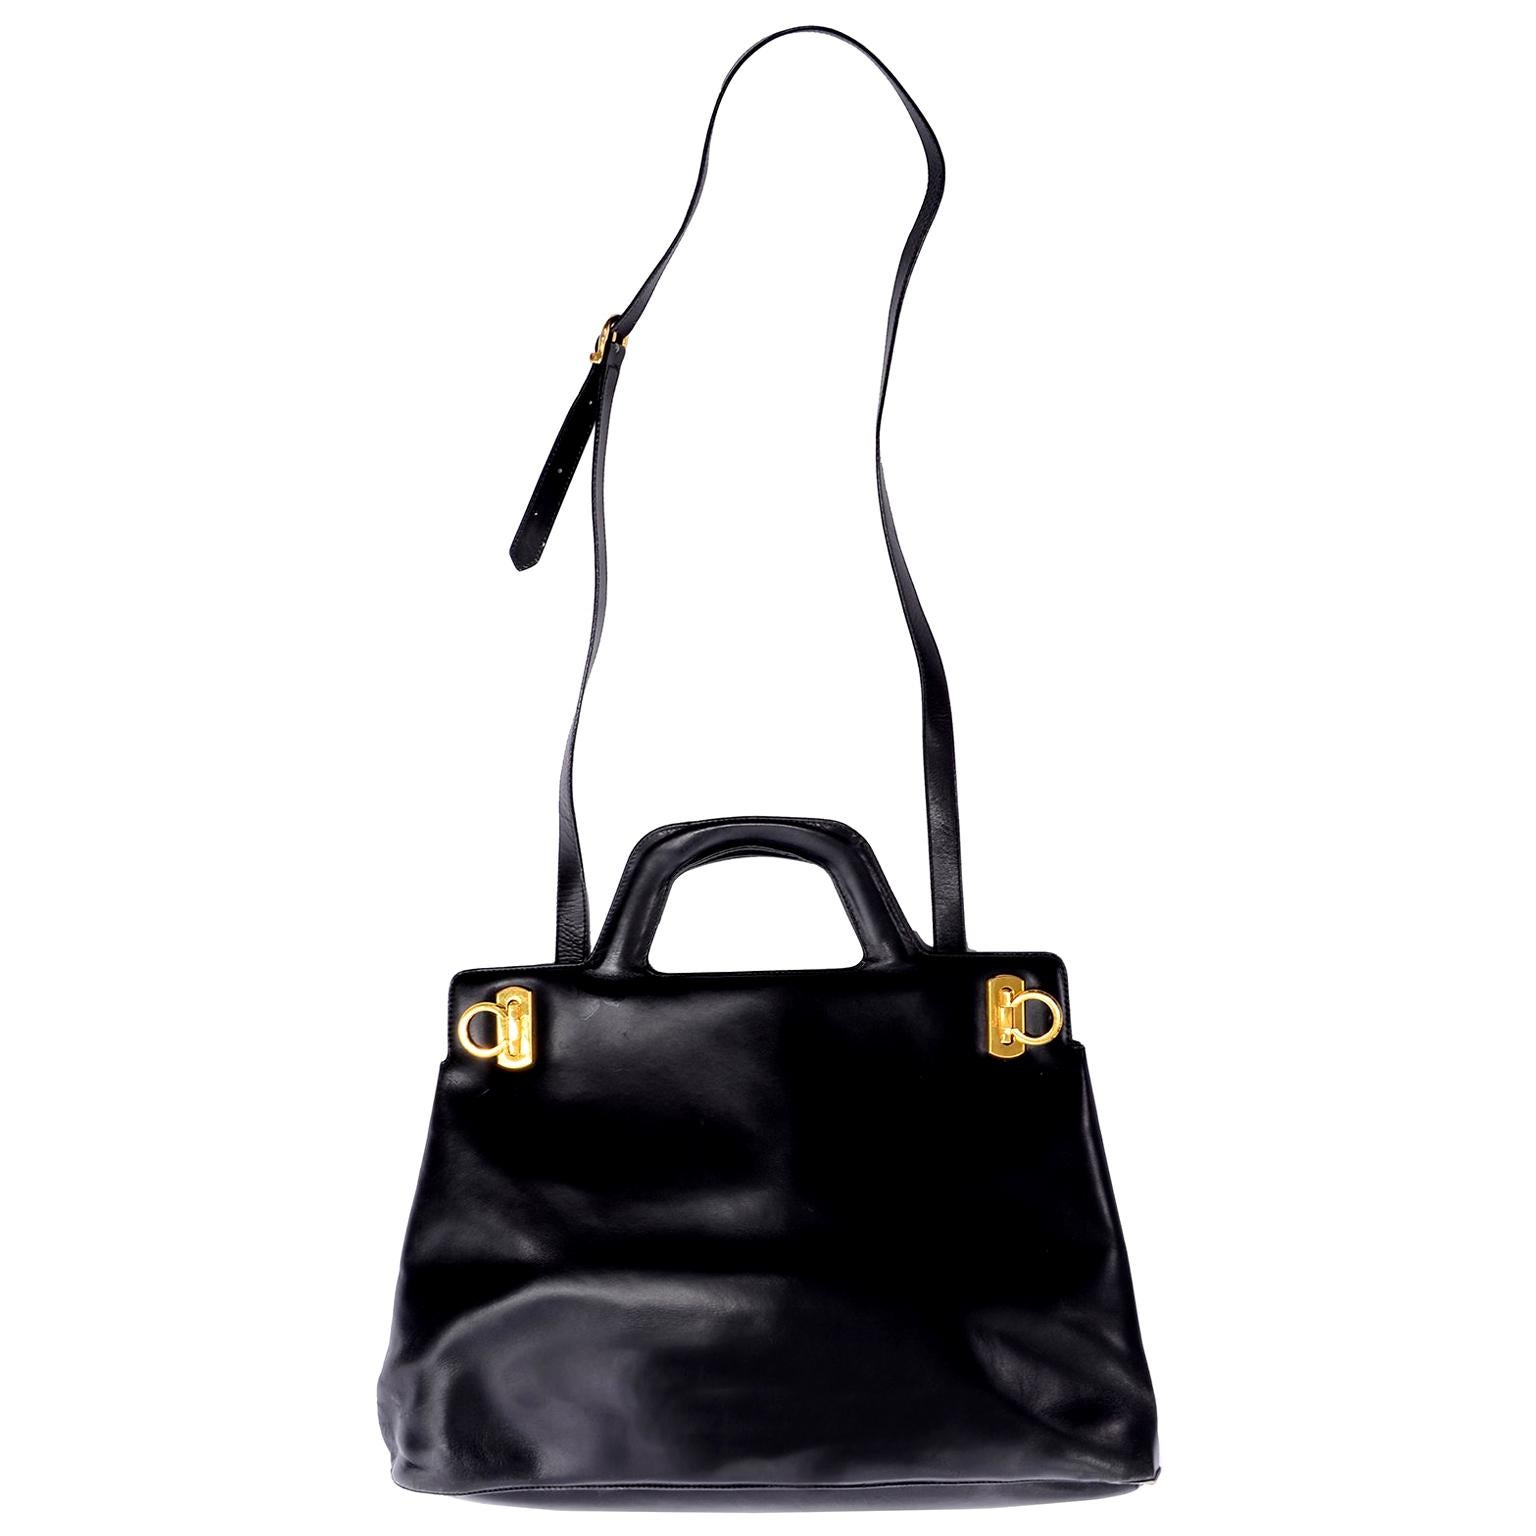 Salvatore Ferragamo Black Leather Top Handle Tote Handbag Shoulder Bag